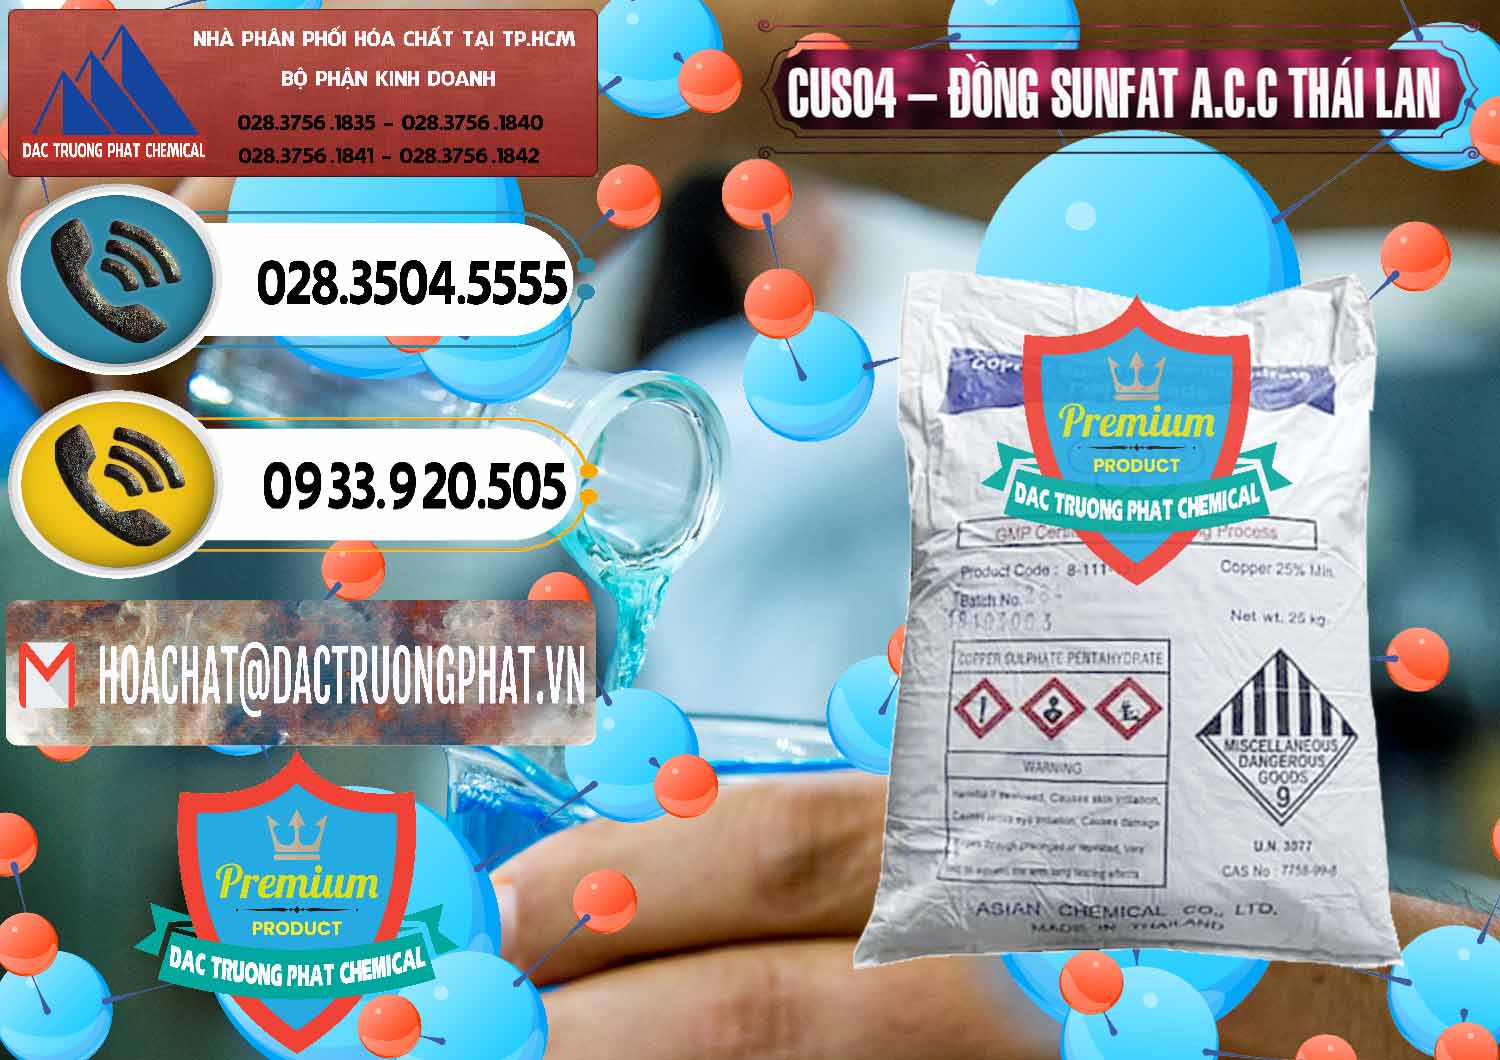 Nơi chuyên bán & cung ứng CuSO4 – Đồng Sunfat A.C.C Thái Lan - 0249 - Phân phối _ kinh doanh hóa chất tại TP.HCM - hoachatdetnhuom.vn